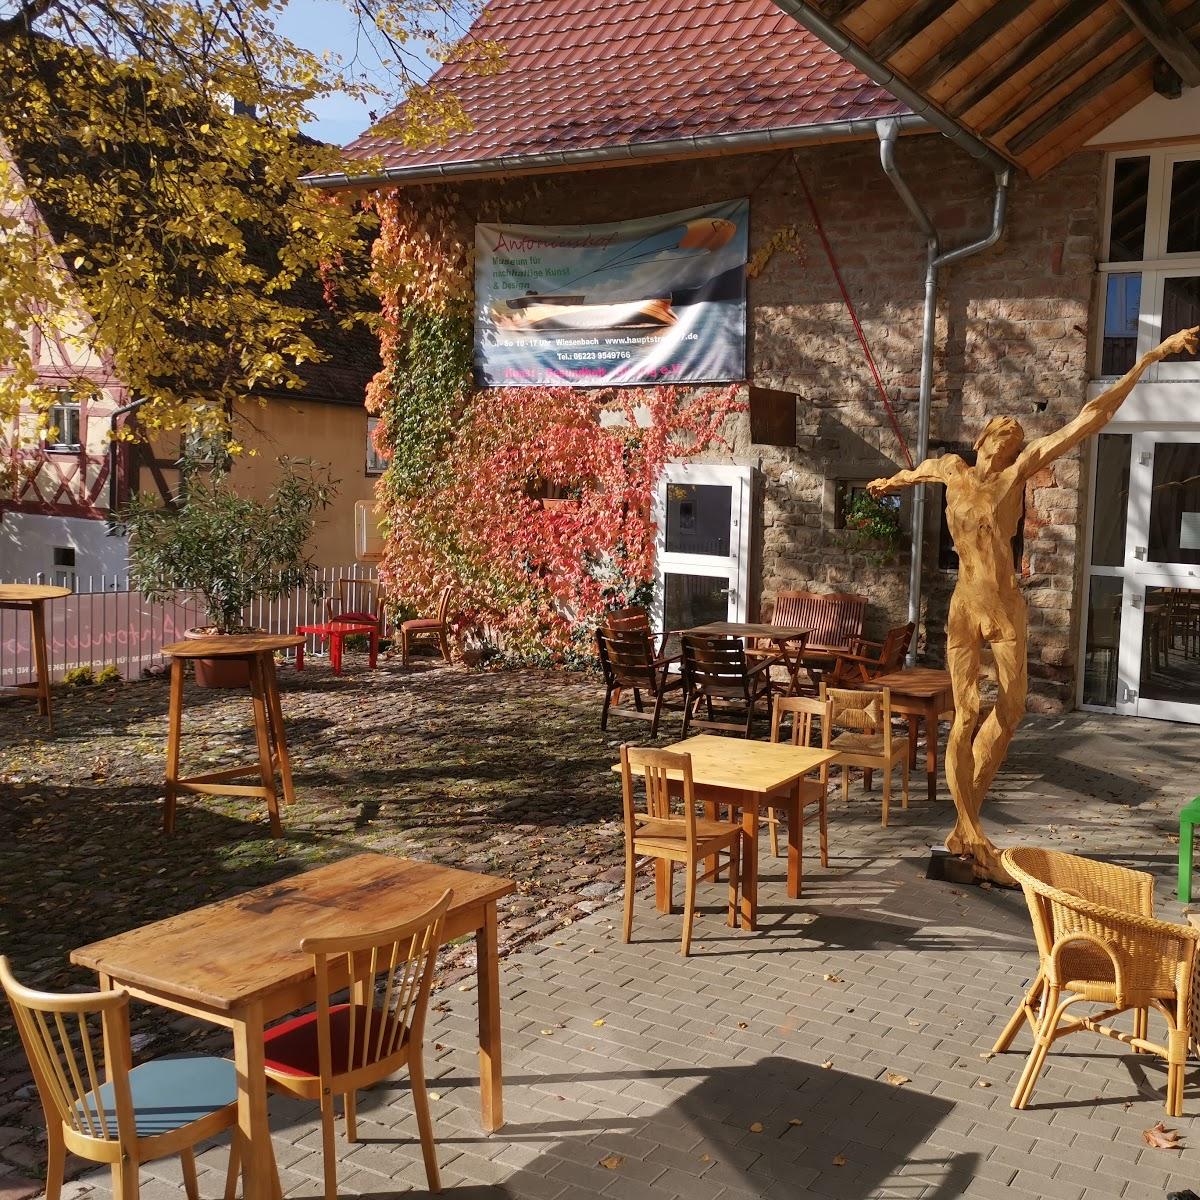 Restaurant "Antoniushof Museum und Kulturzentrum" in Wiesenbach